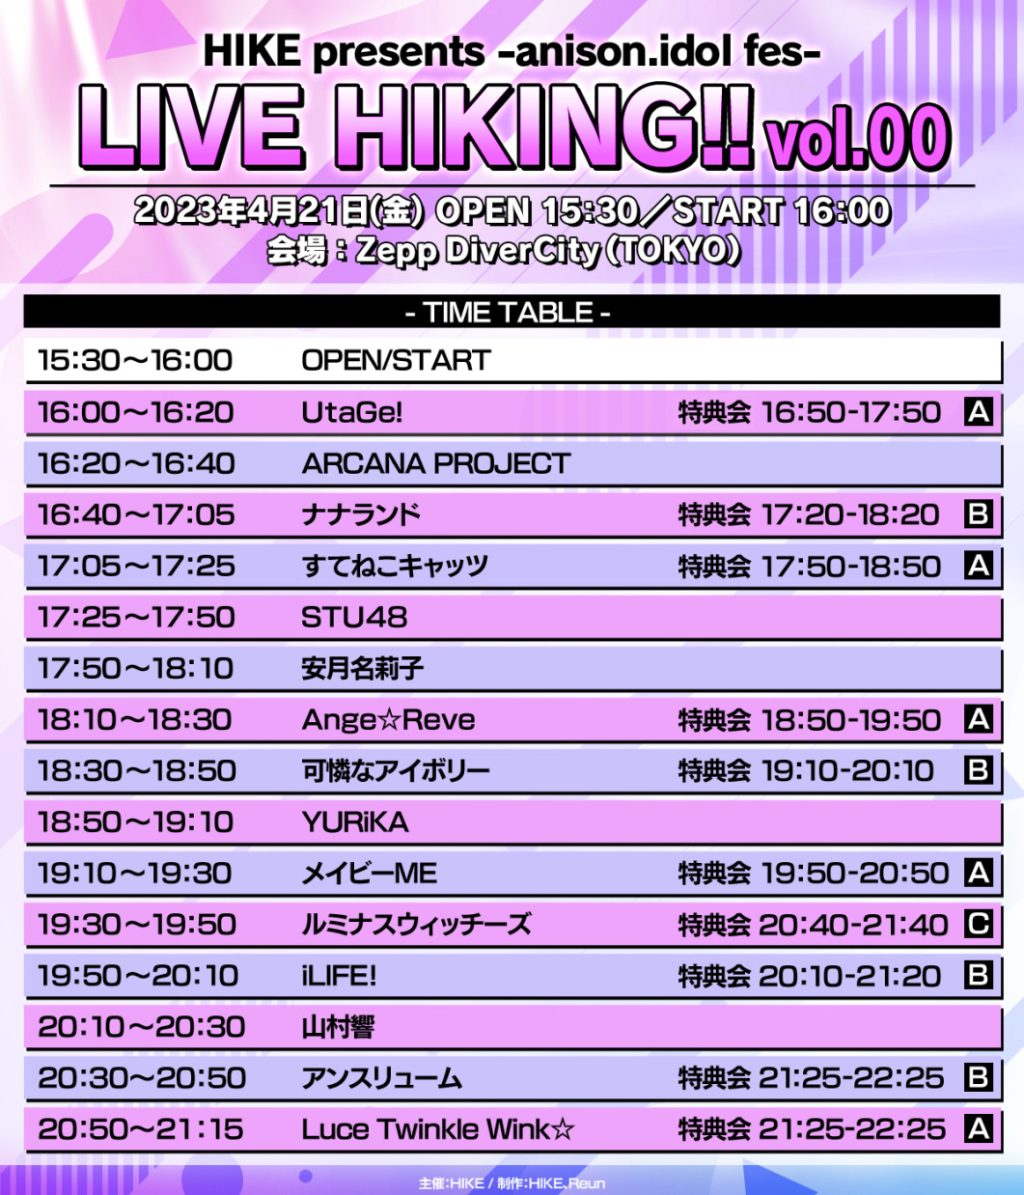 アニソン・アイドルフェスティバル「-anison.idol fes-LIVE HIKING!! vol.00」のタイムテーブル公開！